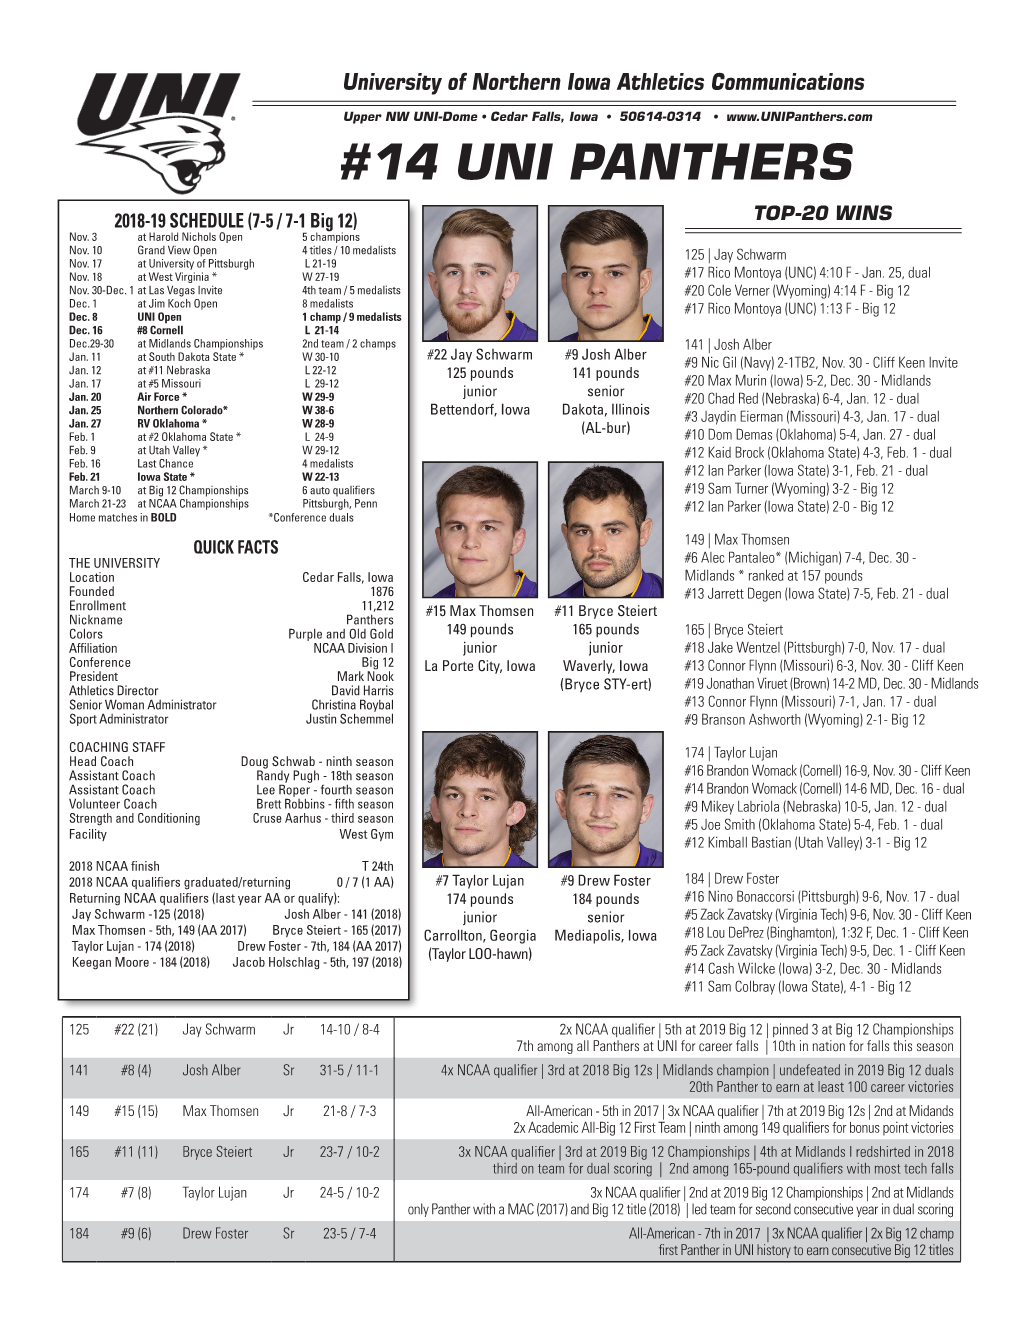 14 Uni Panthers